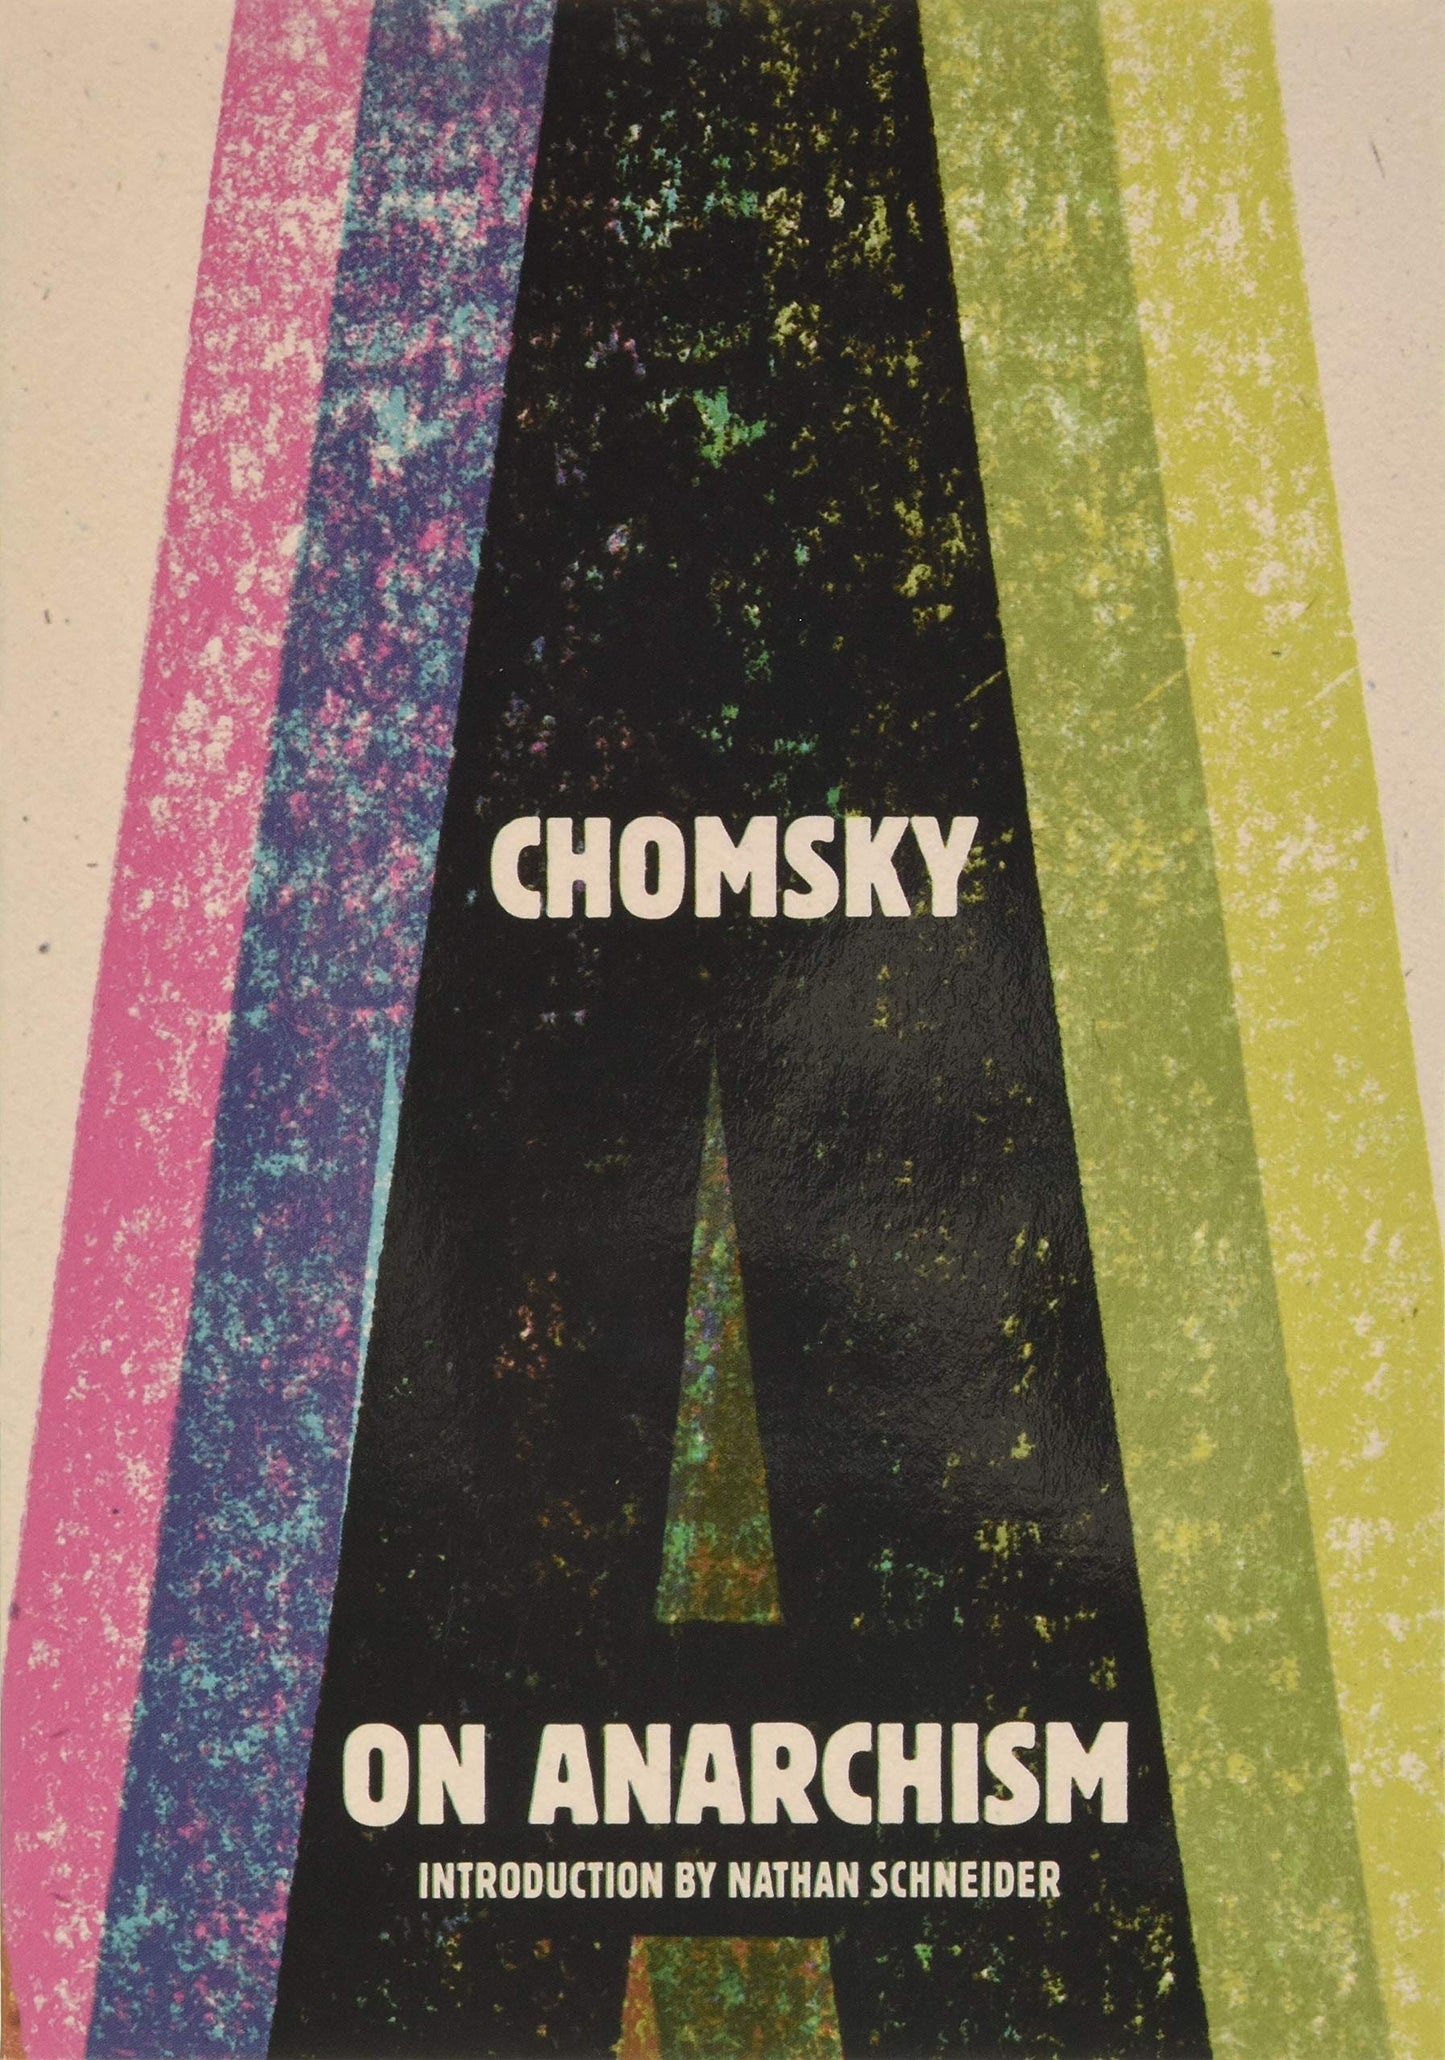 On Anarchism, by Noam Chomsky